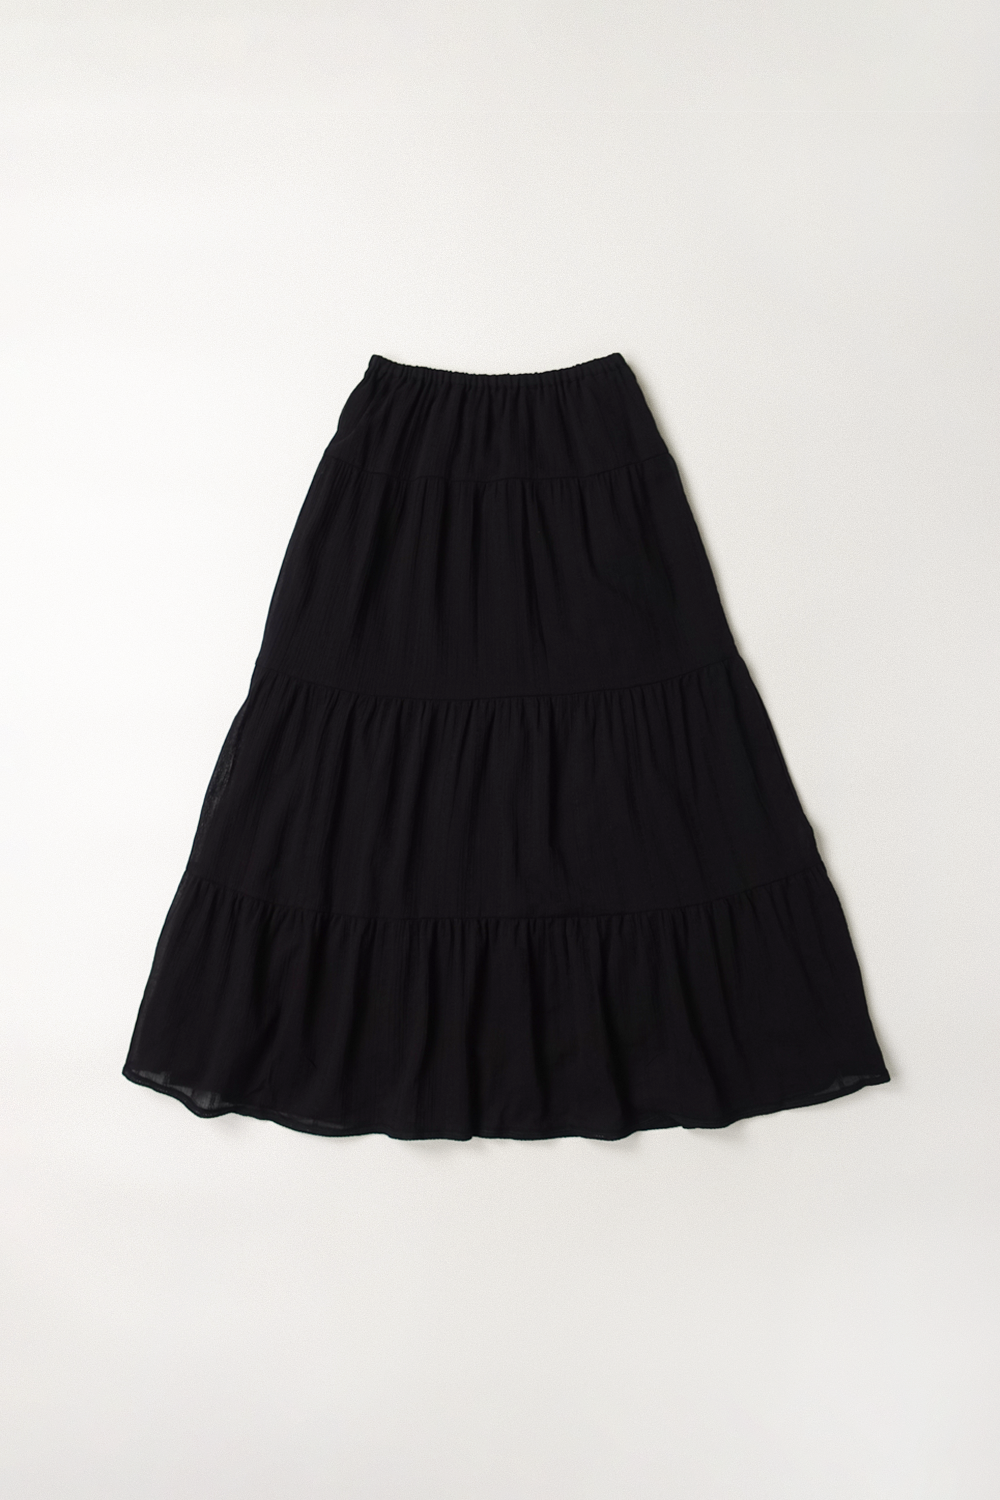 Hippie Girls  Skirt (Black)